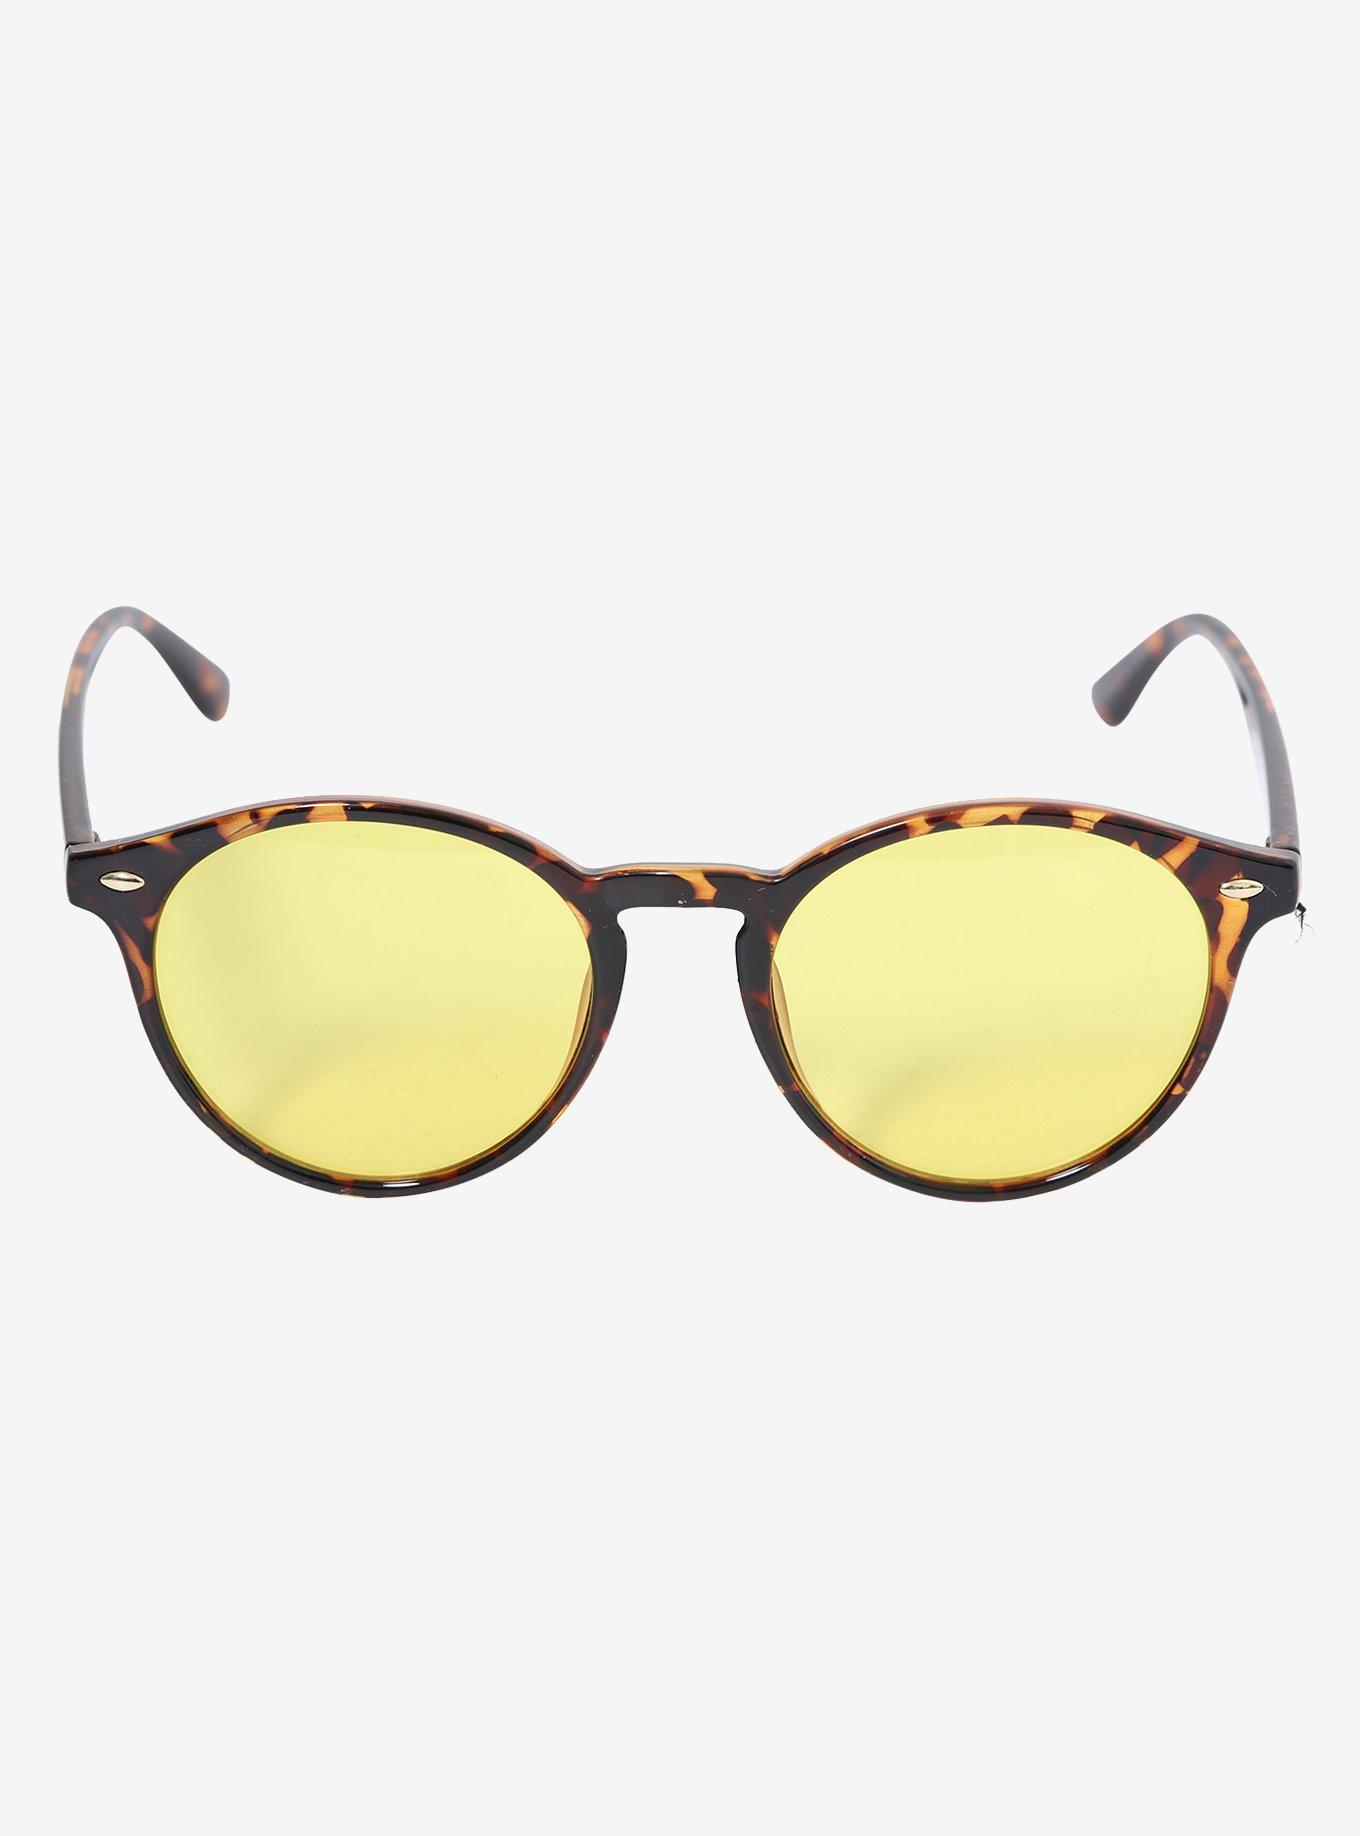 Yellow Lens Tortoise Shell Sunglasses, , alternate